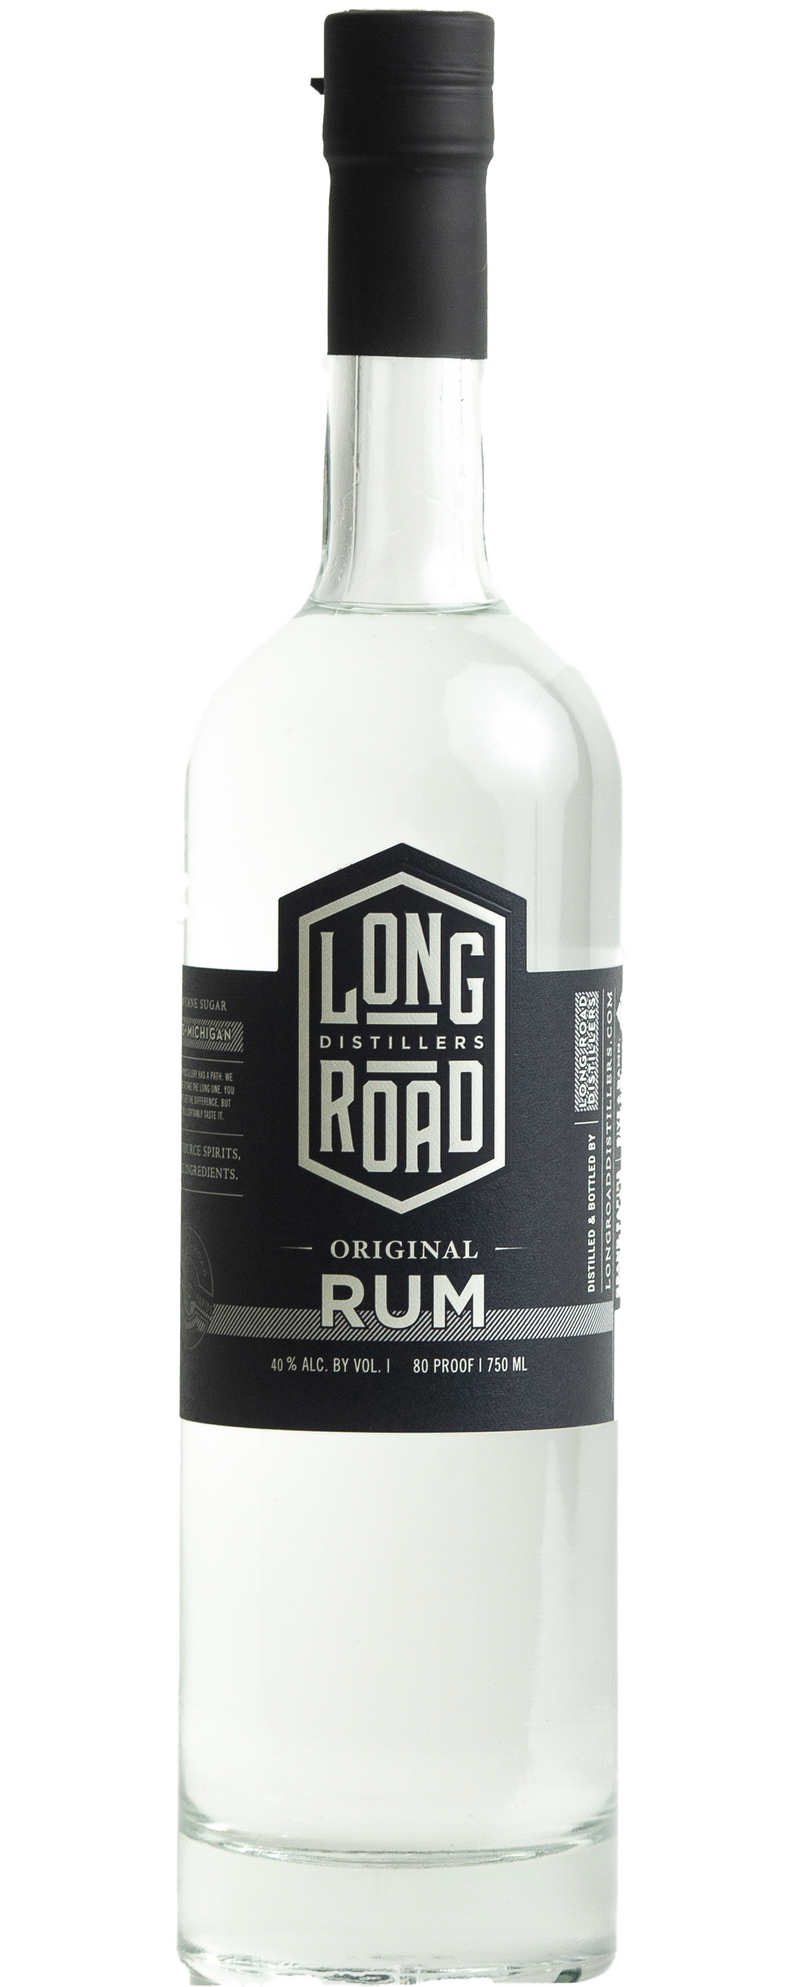 LONG ROAD ORIGINAL RUM Rum BeverageWarehouse